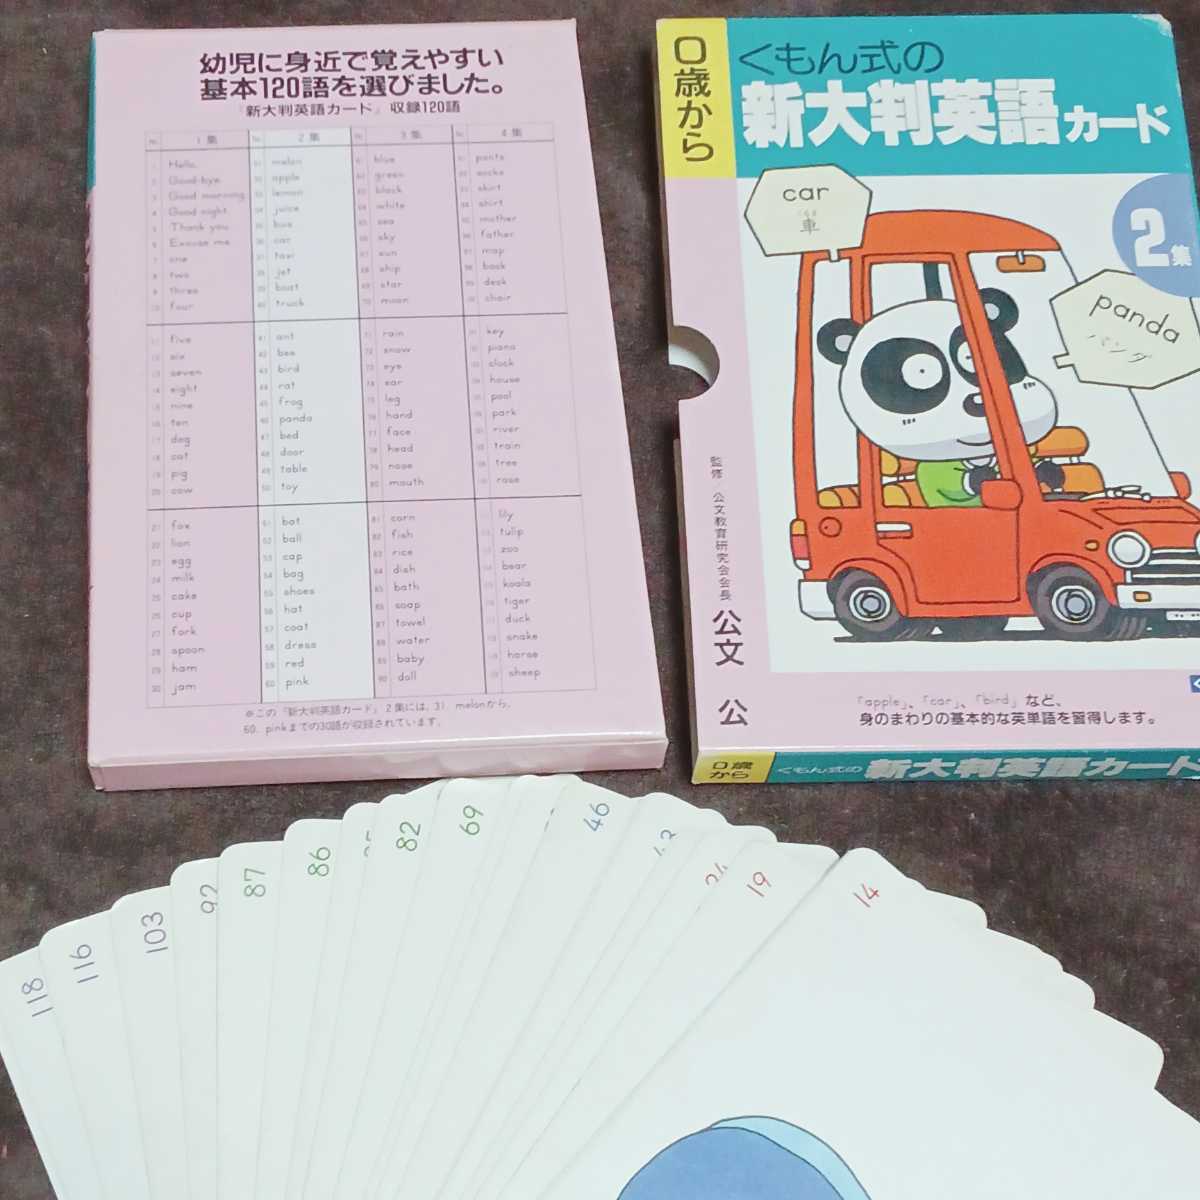 ku.. type card 6 set new large size Chinese character card large size common .. word card new large size English card haiku card .... ... writing . intellectual training 